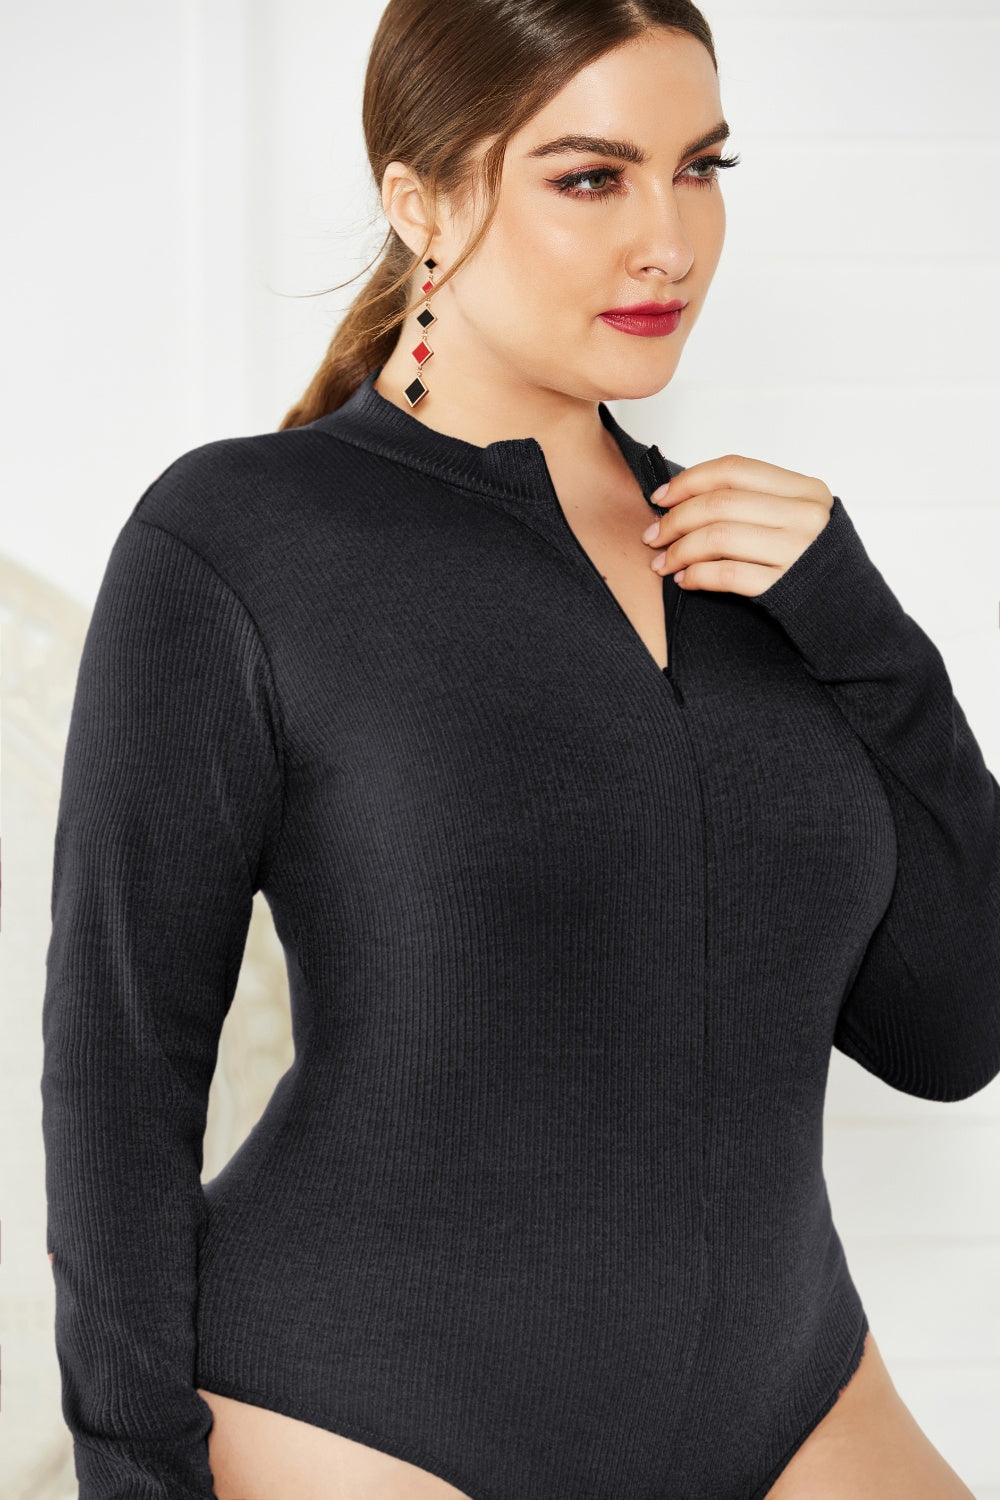 BodiModi UrbanFit® Zip-Up Long Sleeve Bodysuit - Trendy Plus Size